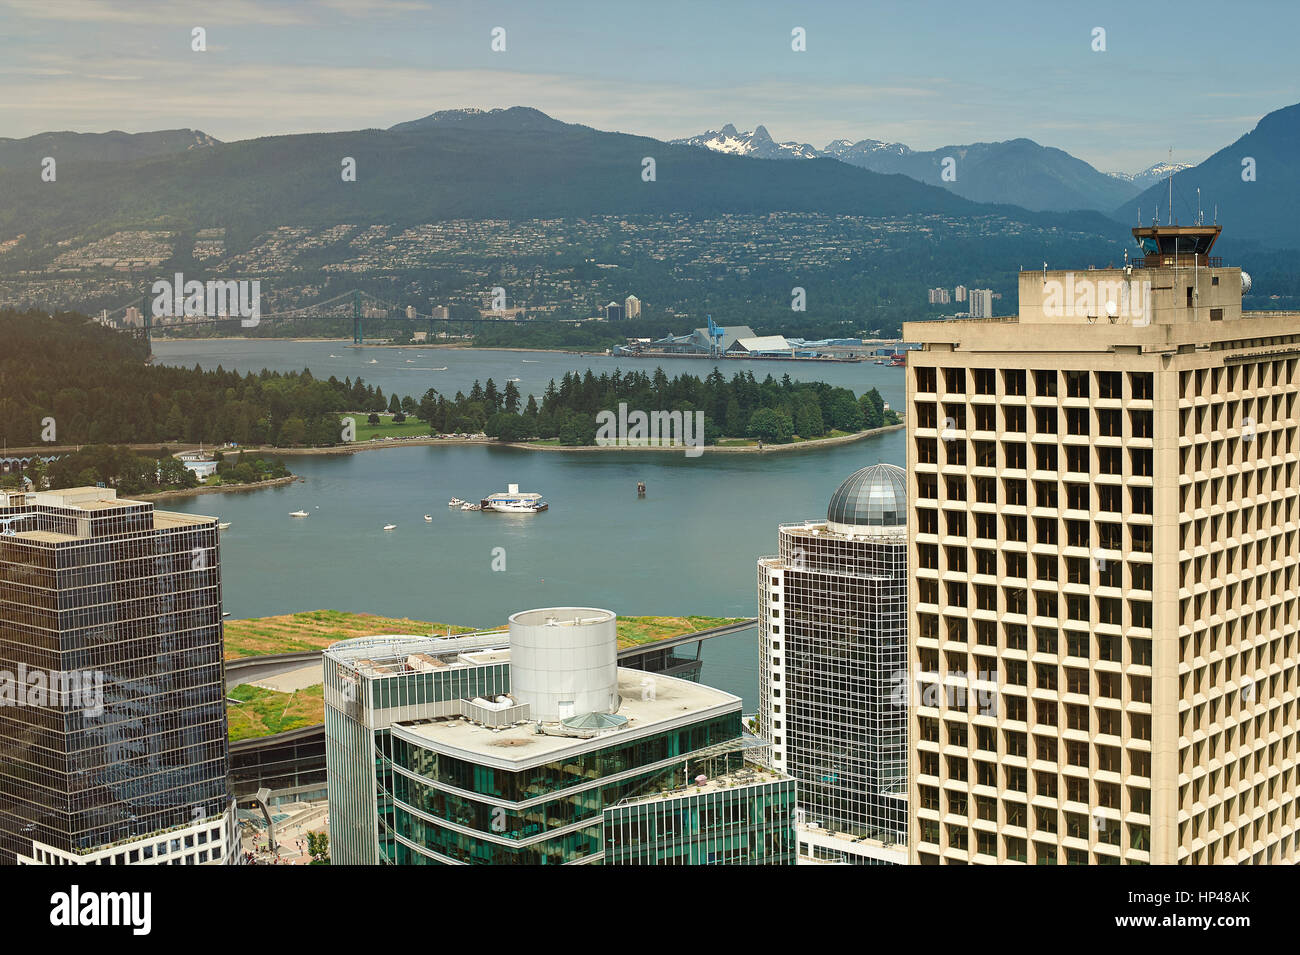 Stadtbild der Innenstadt von Vancouver Luftbild auf Bay. Städtische Gebäude in Kanada Panorama Stockfoto